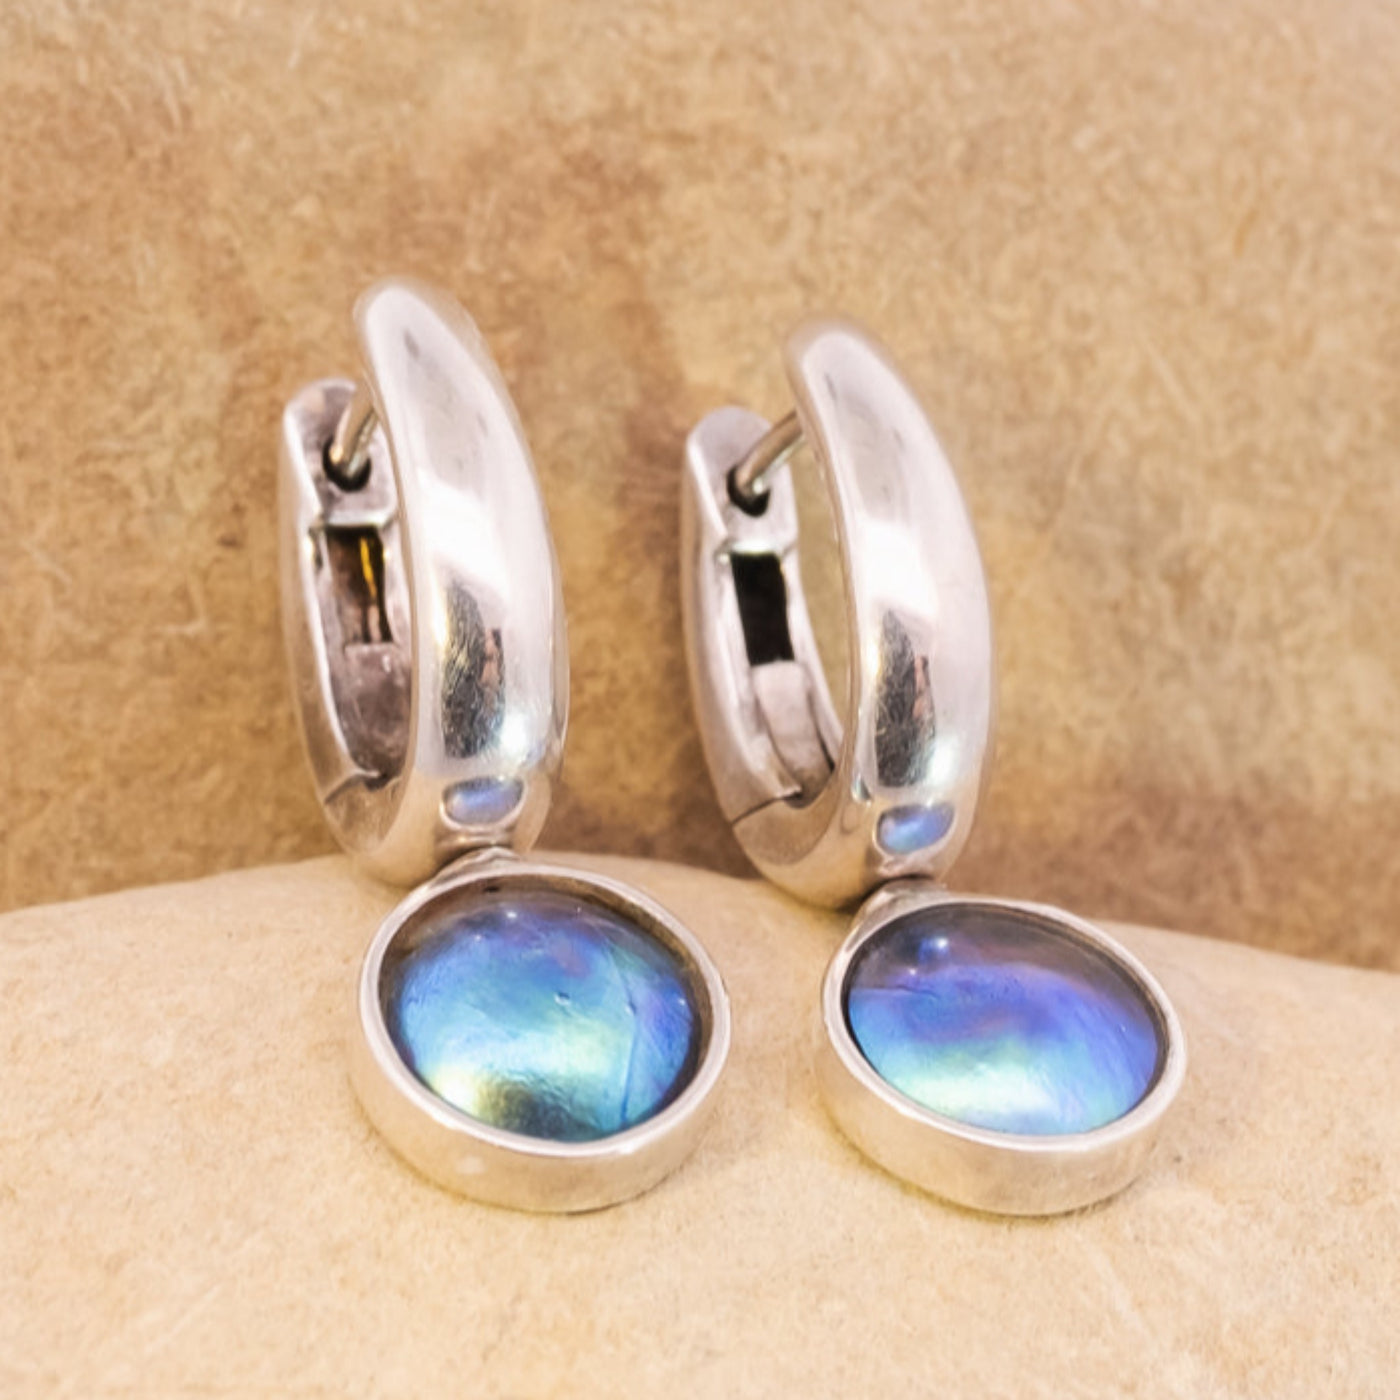 Pearl Torea Earrings - Oval